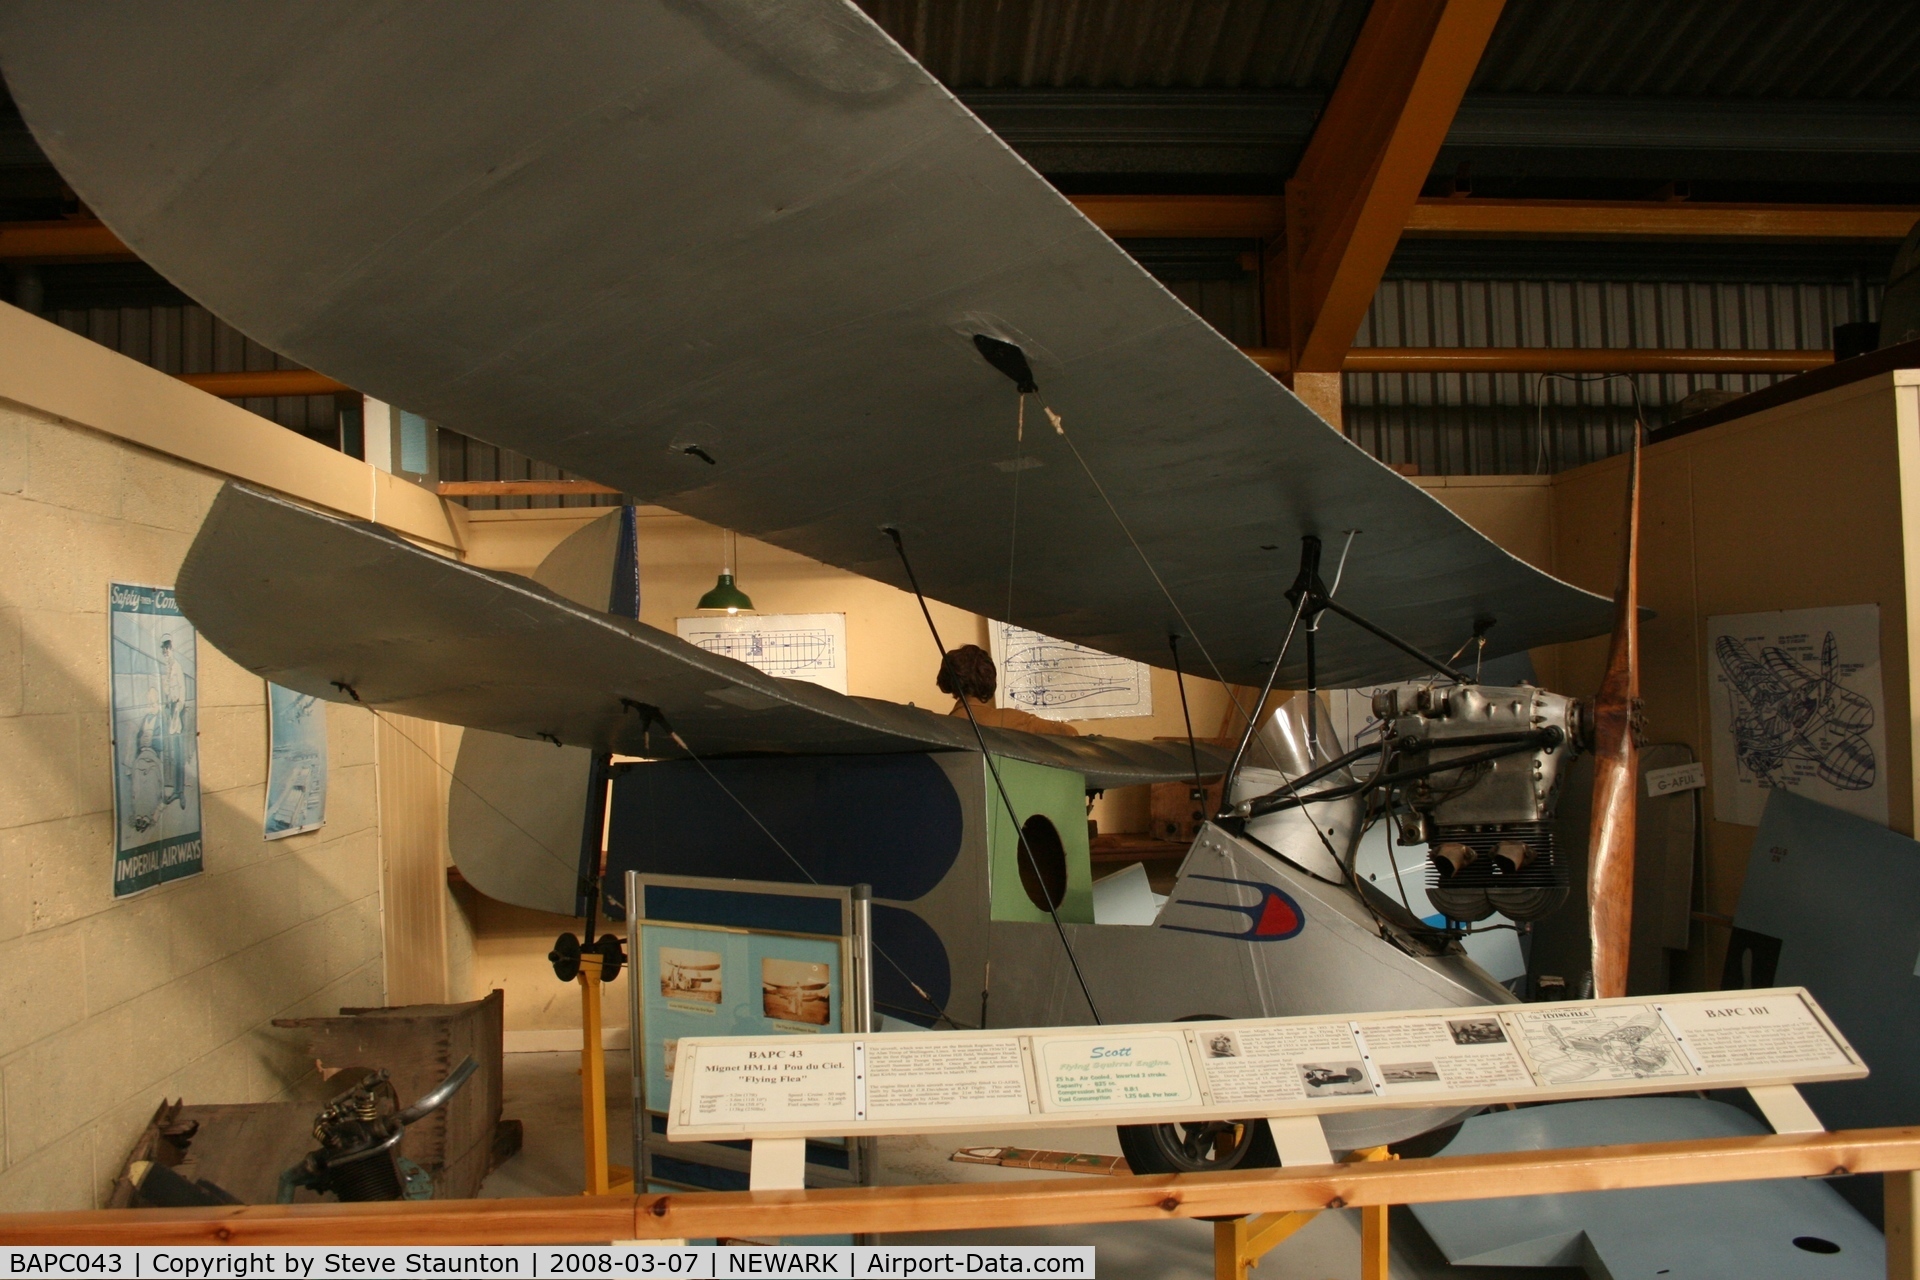 BAPC043, 1935 Mignet HM.14 Pou-du-Ciel C/N BAPC.043, Newark Air Museum, March 2008